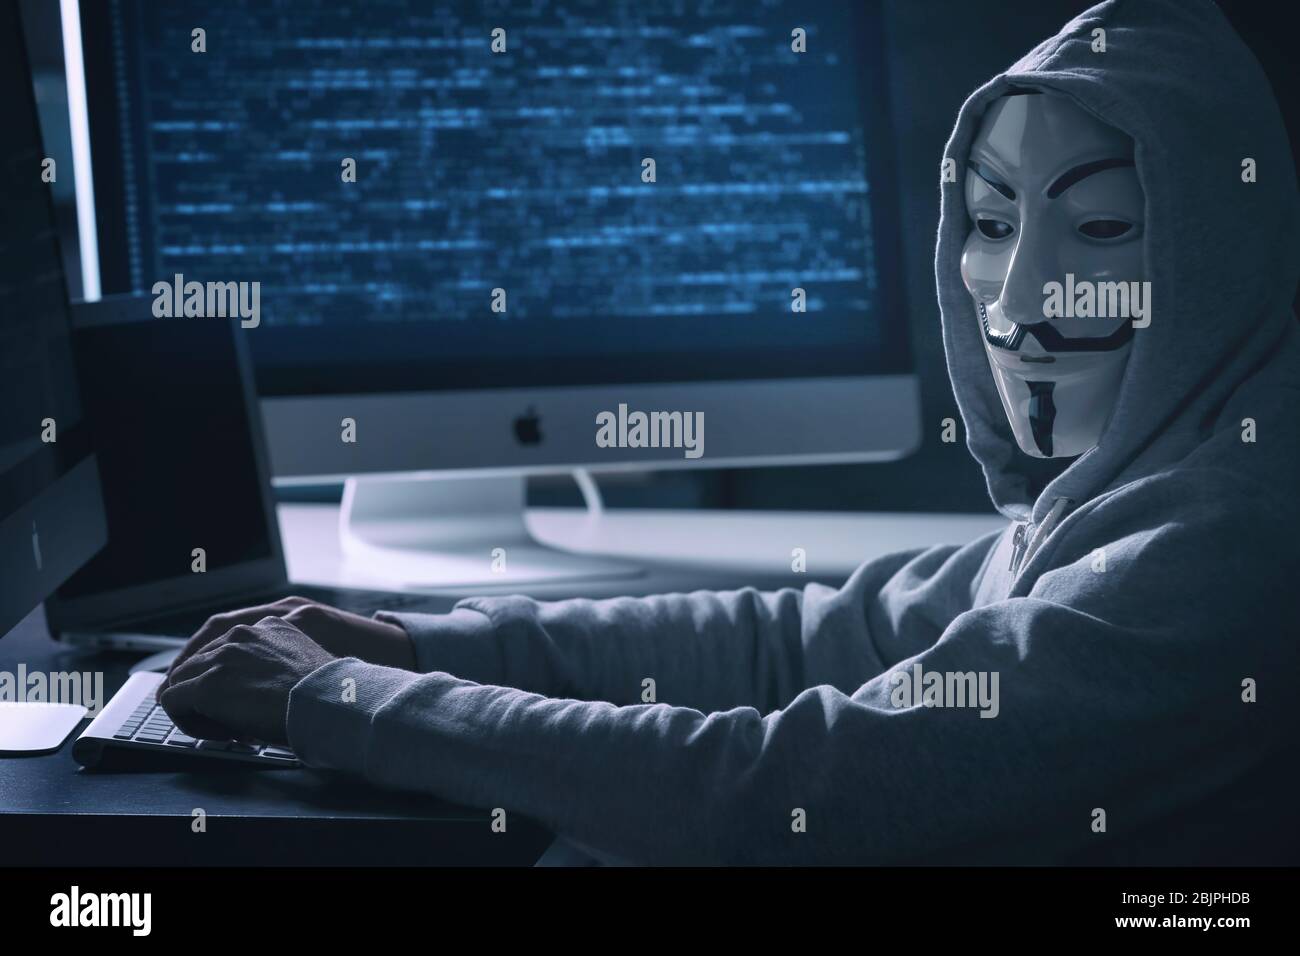 MYKOLAIV, UKRAINE - 29 SEPTEMBRE 2017: Personne anonyme dans le masque Guy Fawkes utilisant l'ordinateur à l'intérieur Banque D'Images